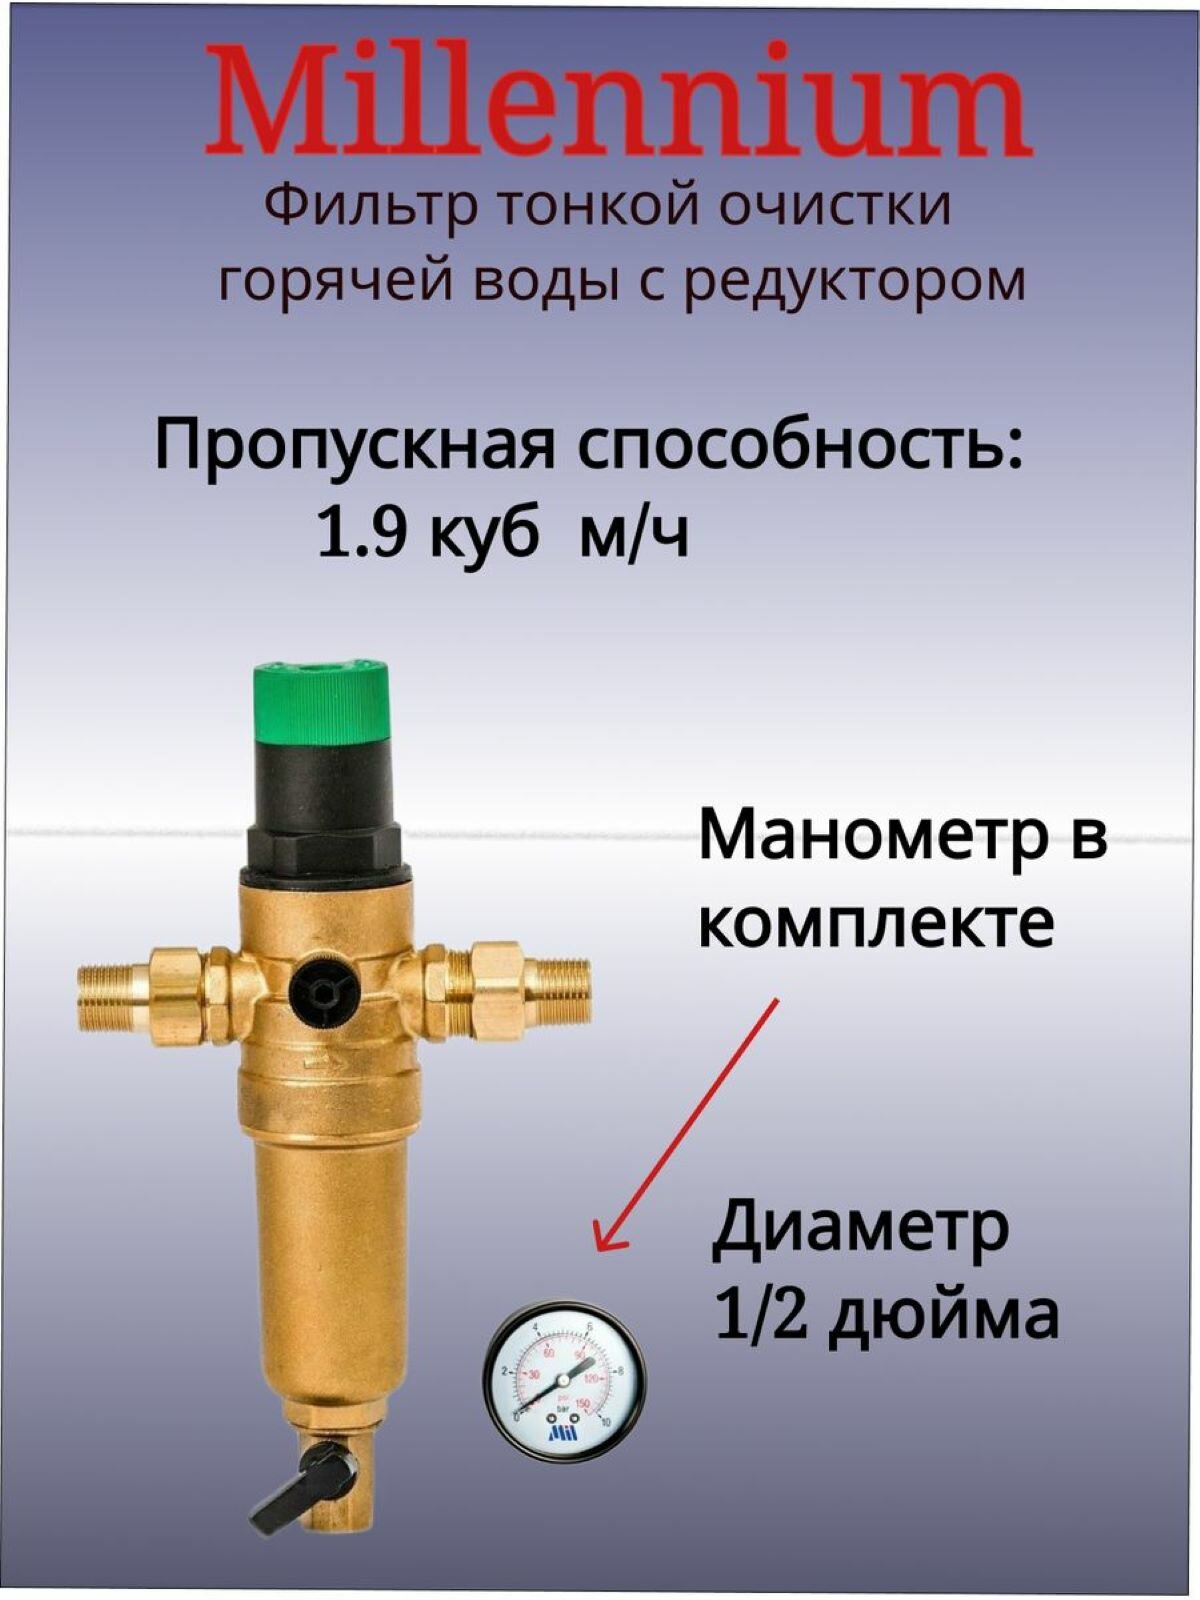 Фильтр с редуктором давления 1/2 для горячей воды Millennium